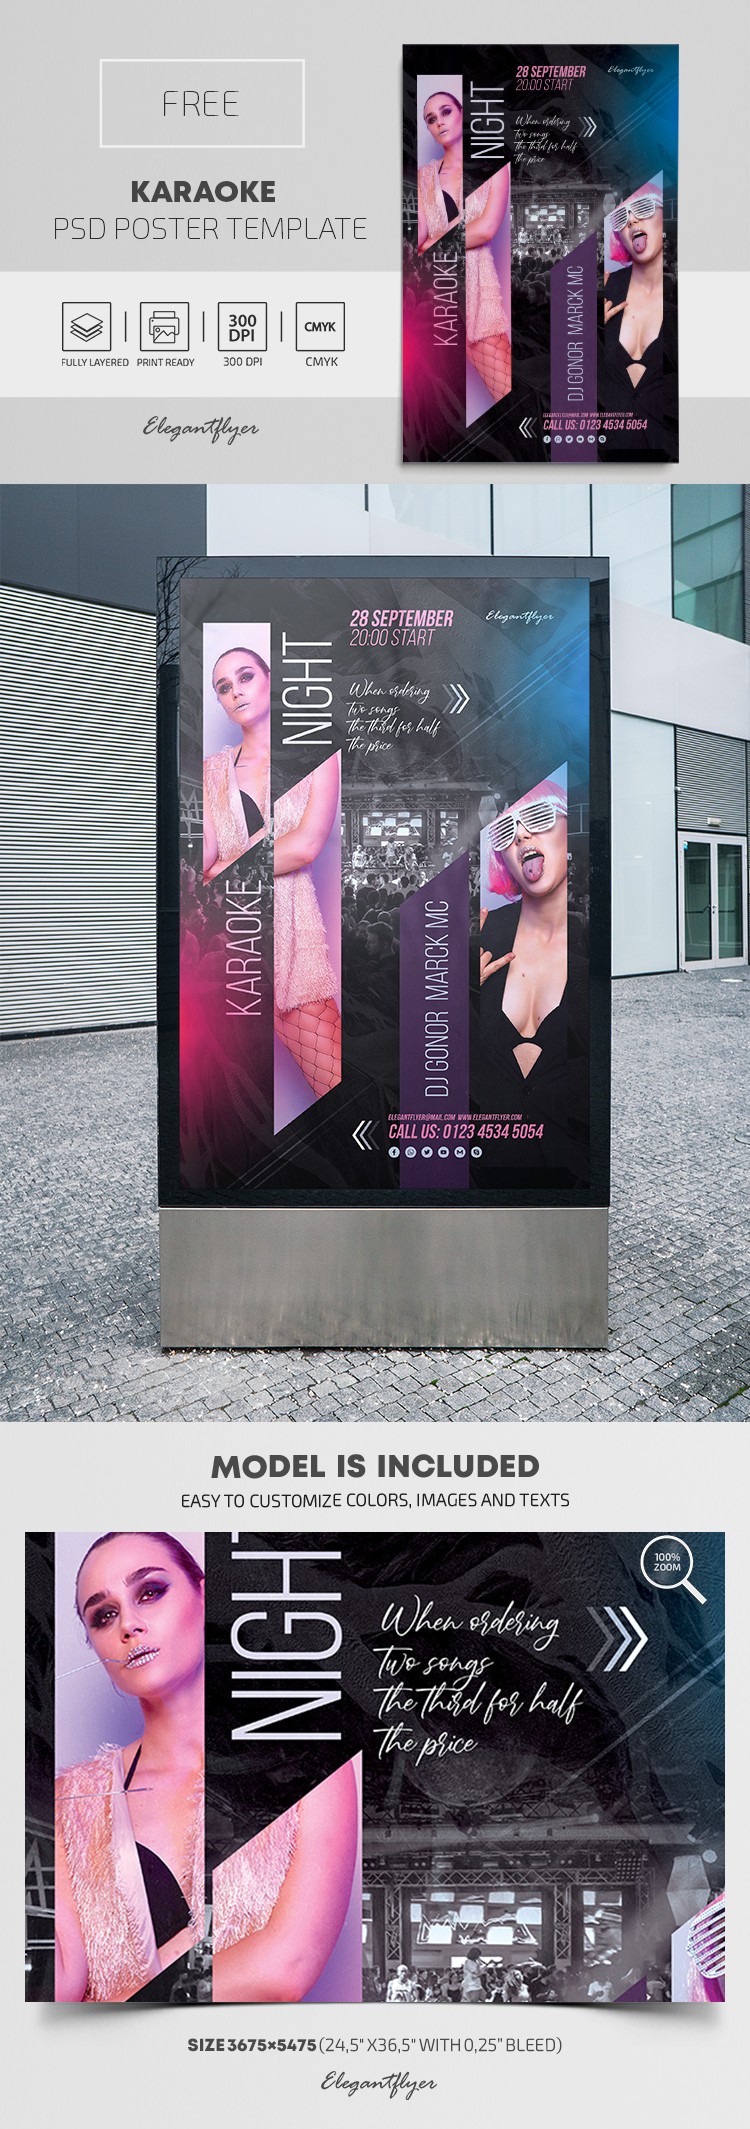 Cartaz de karaoke by ElegantFlyer